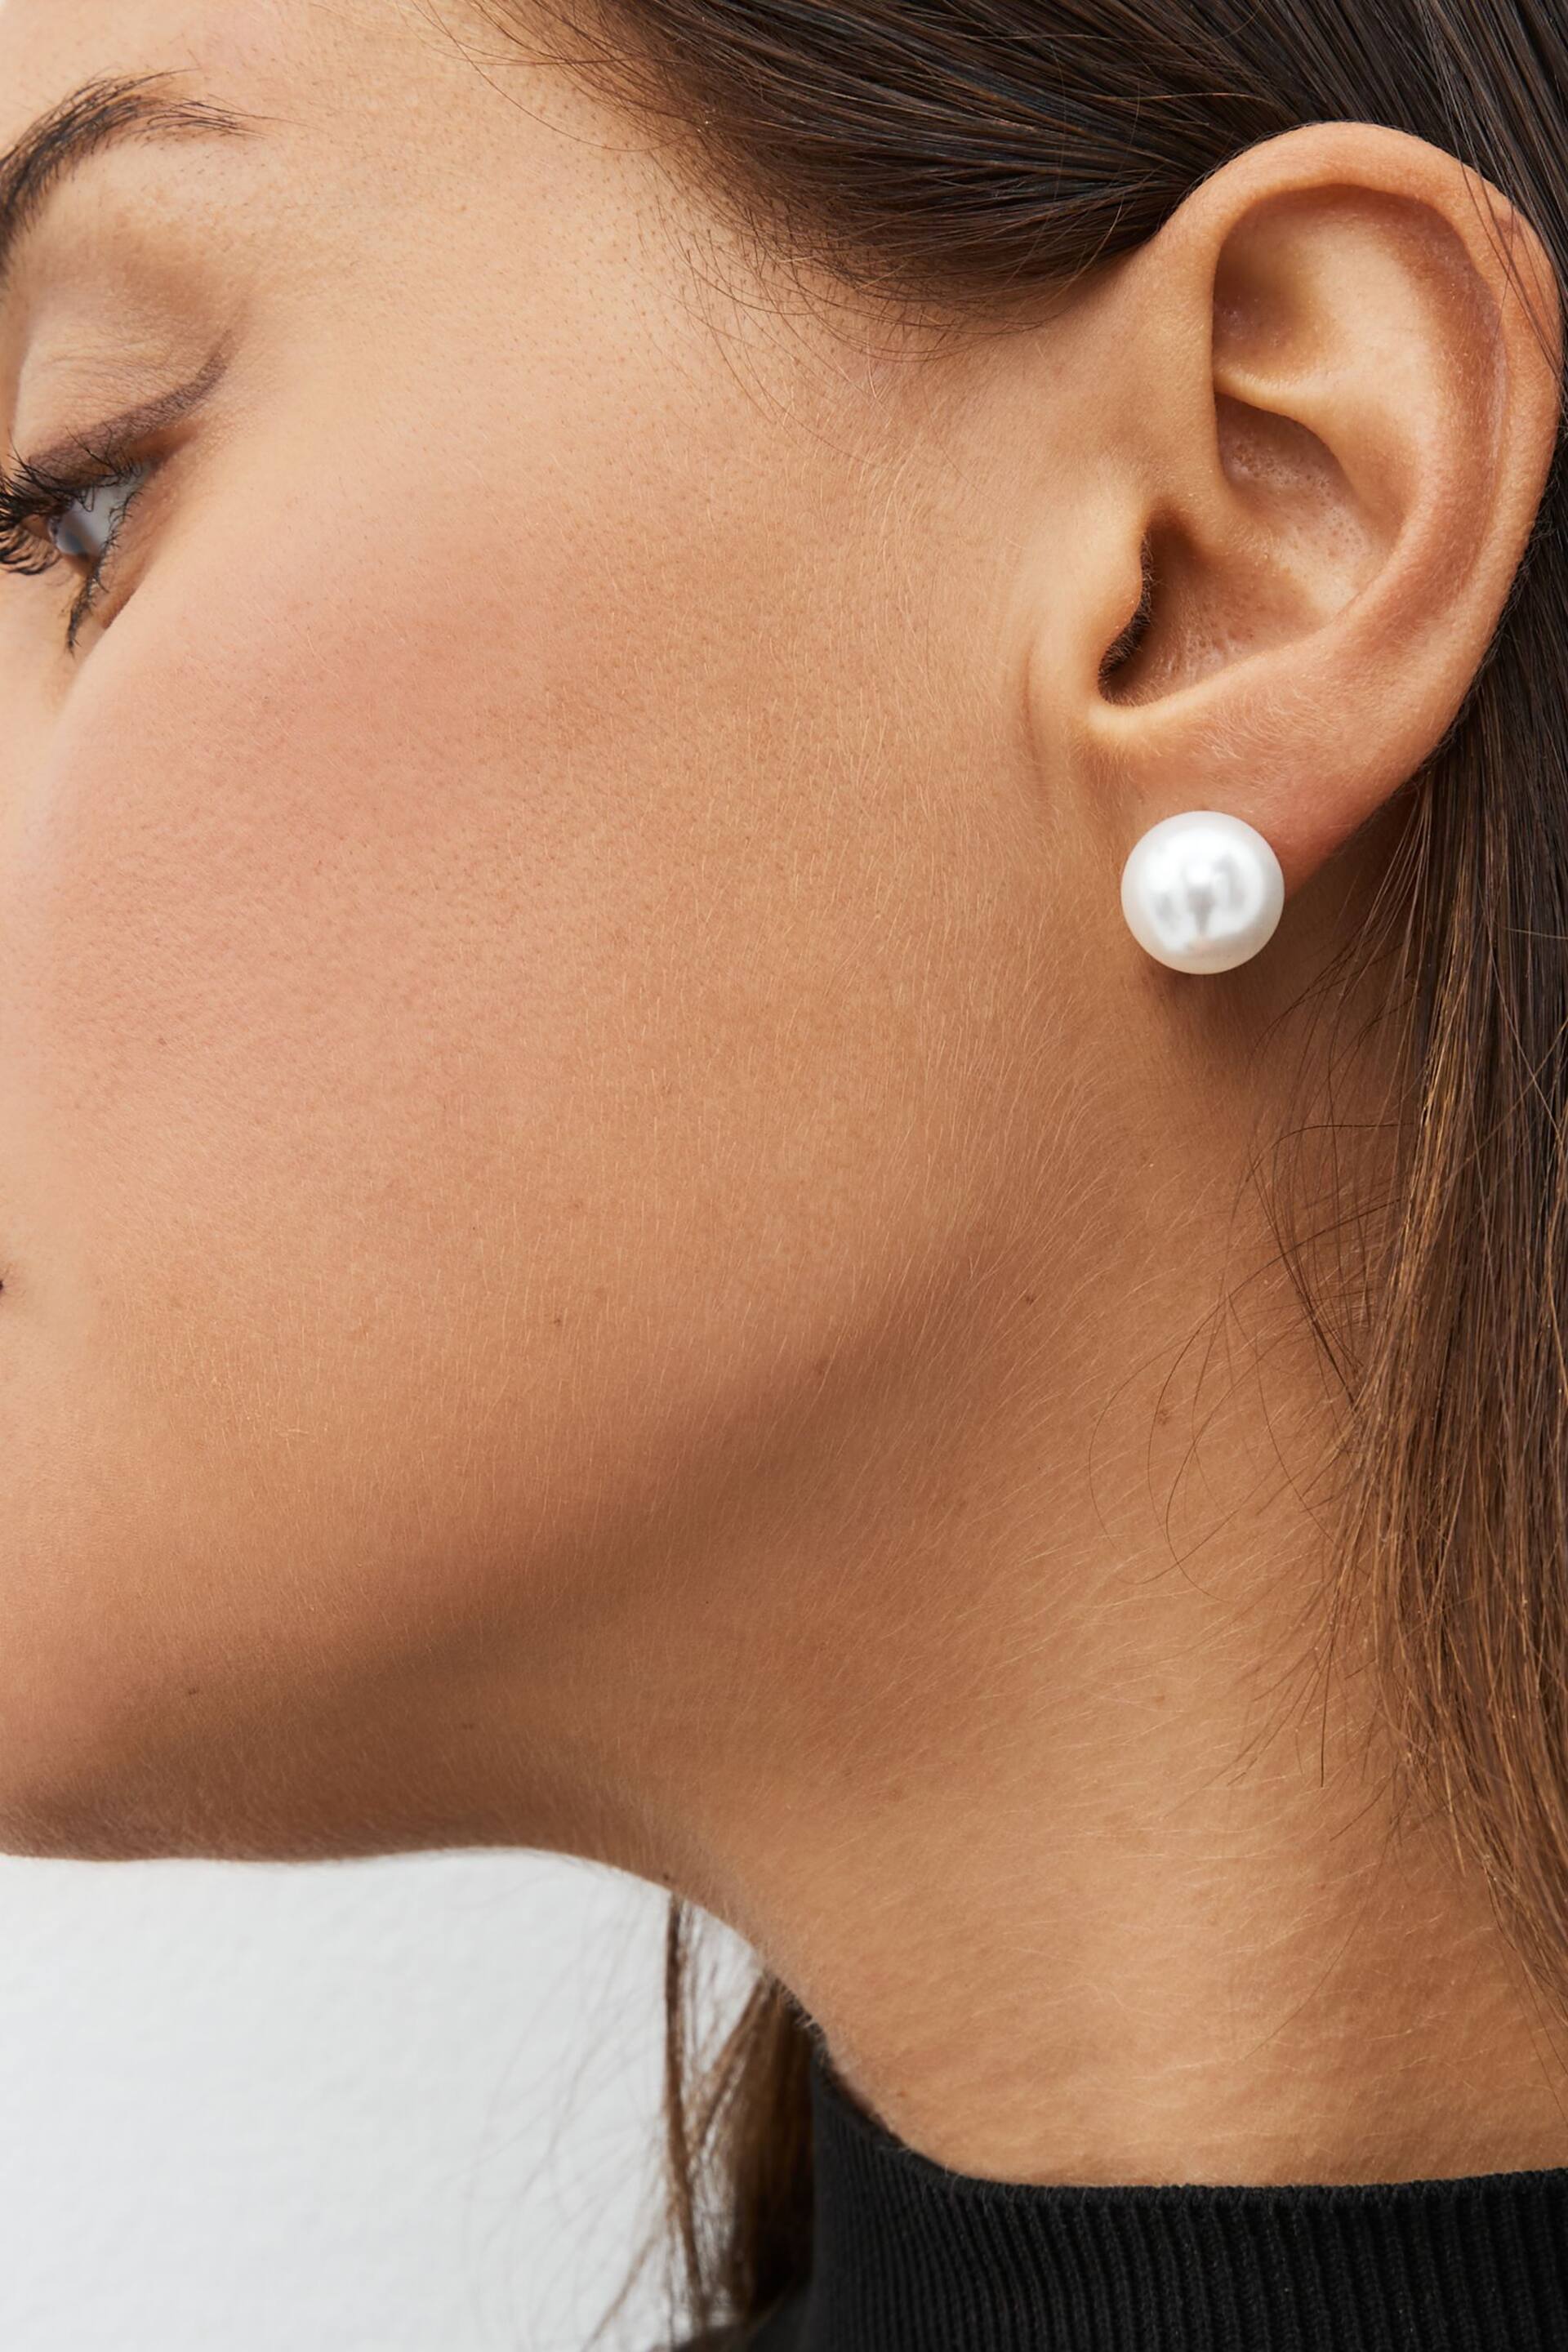 White Pearl Stud Earrings 5 Pack - Image 1 of 3